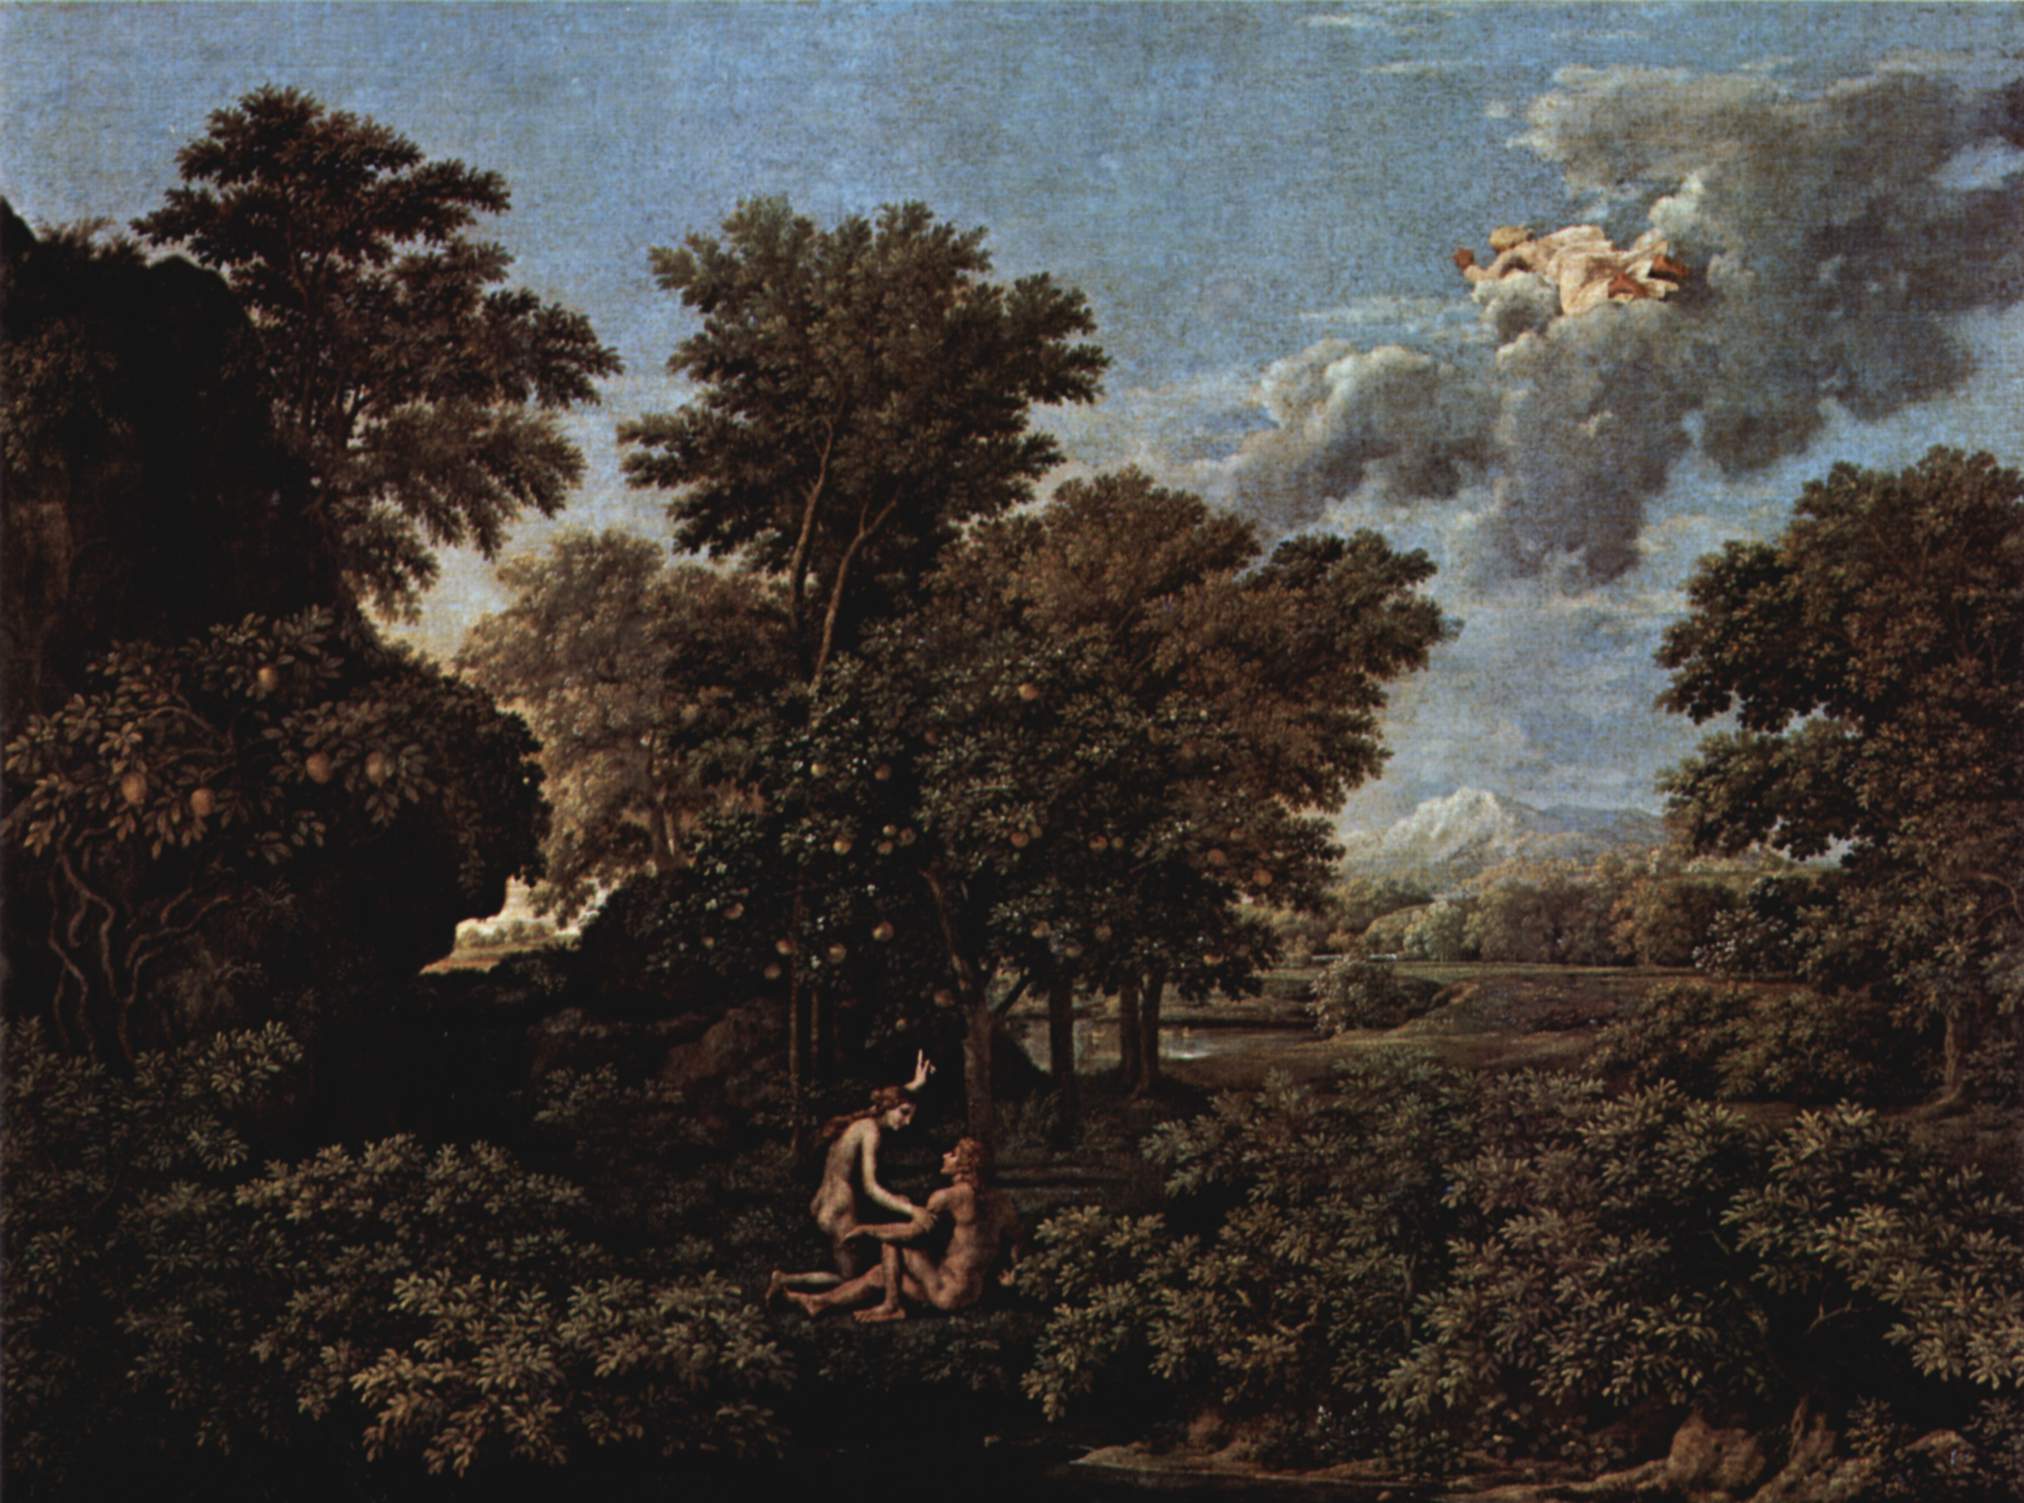  Le Printemps ou Le Paradis terrestre by Nicolas Poussin - 1664 - 117 x 160 cm Musée du Louvre